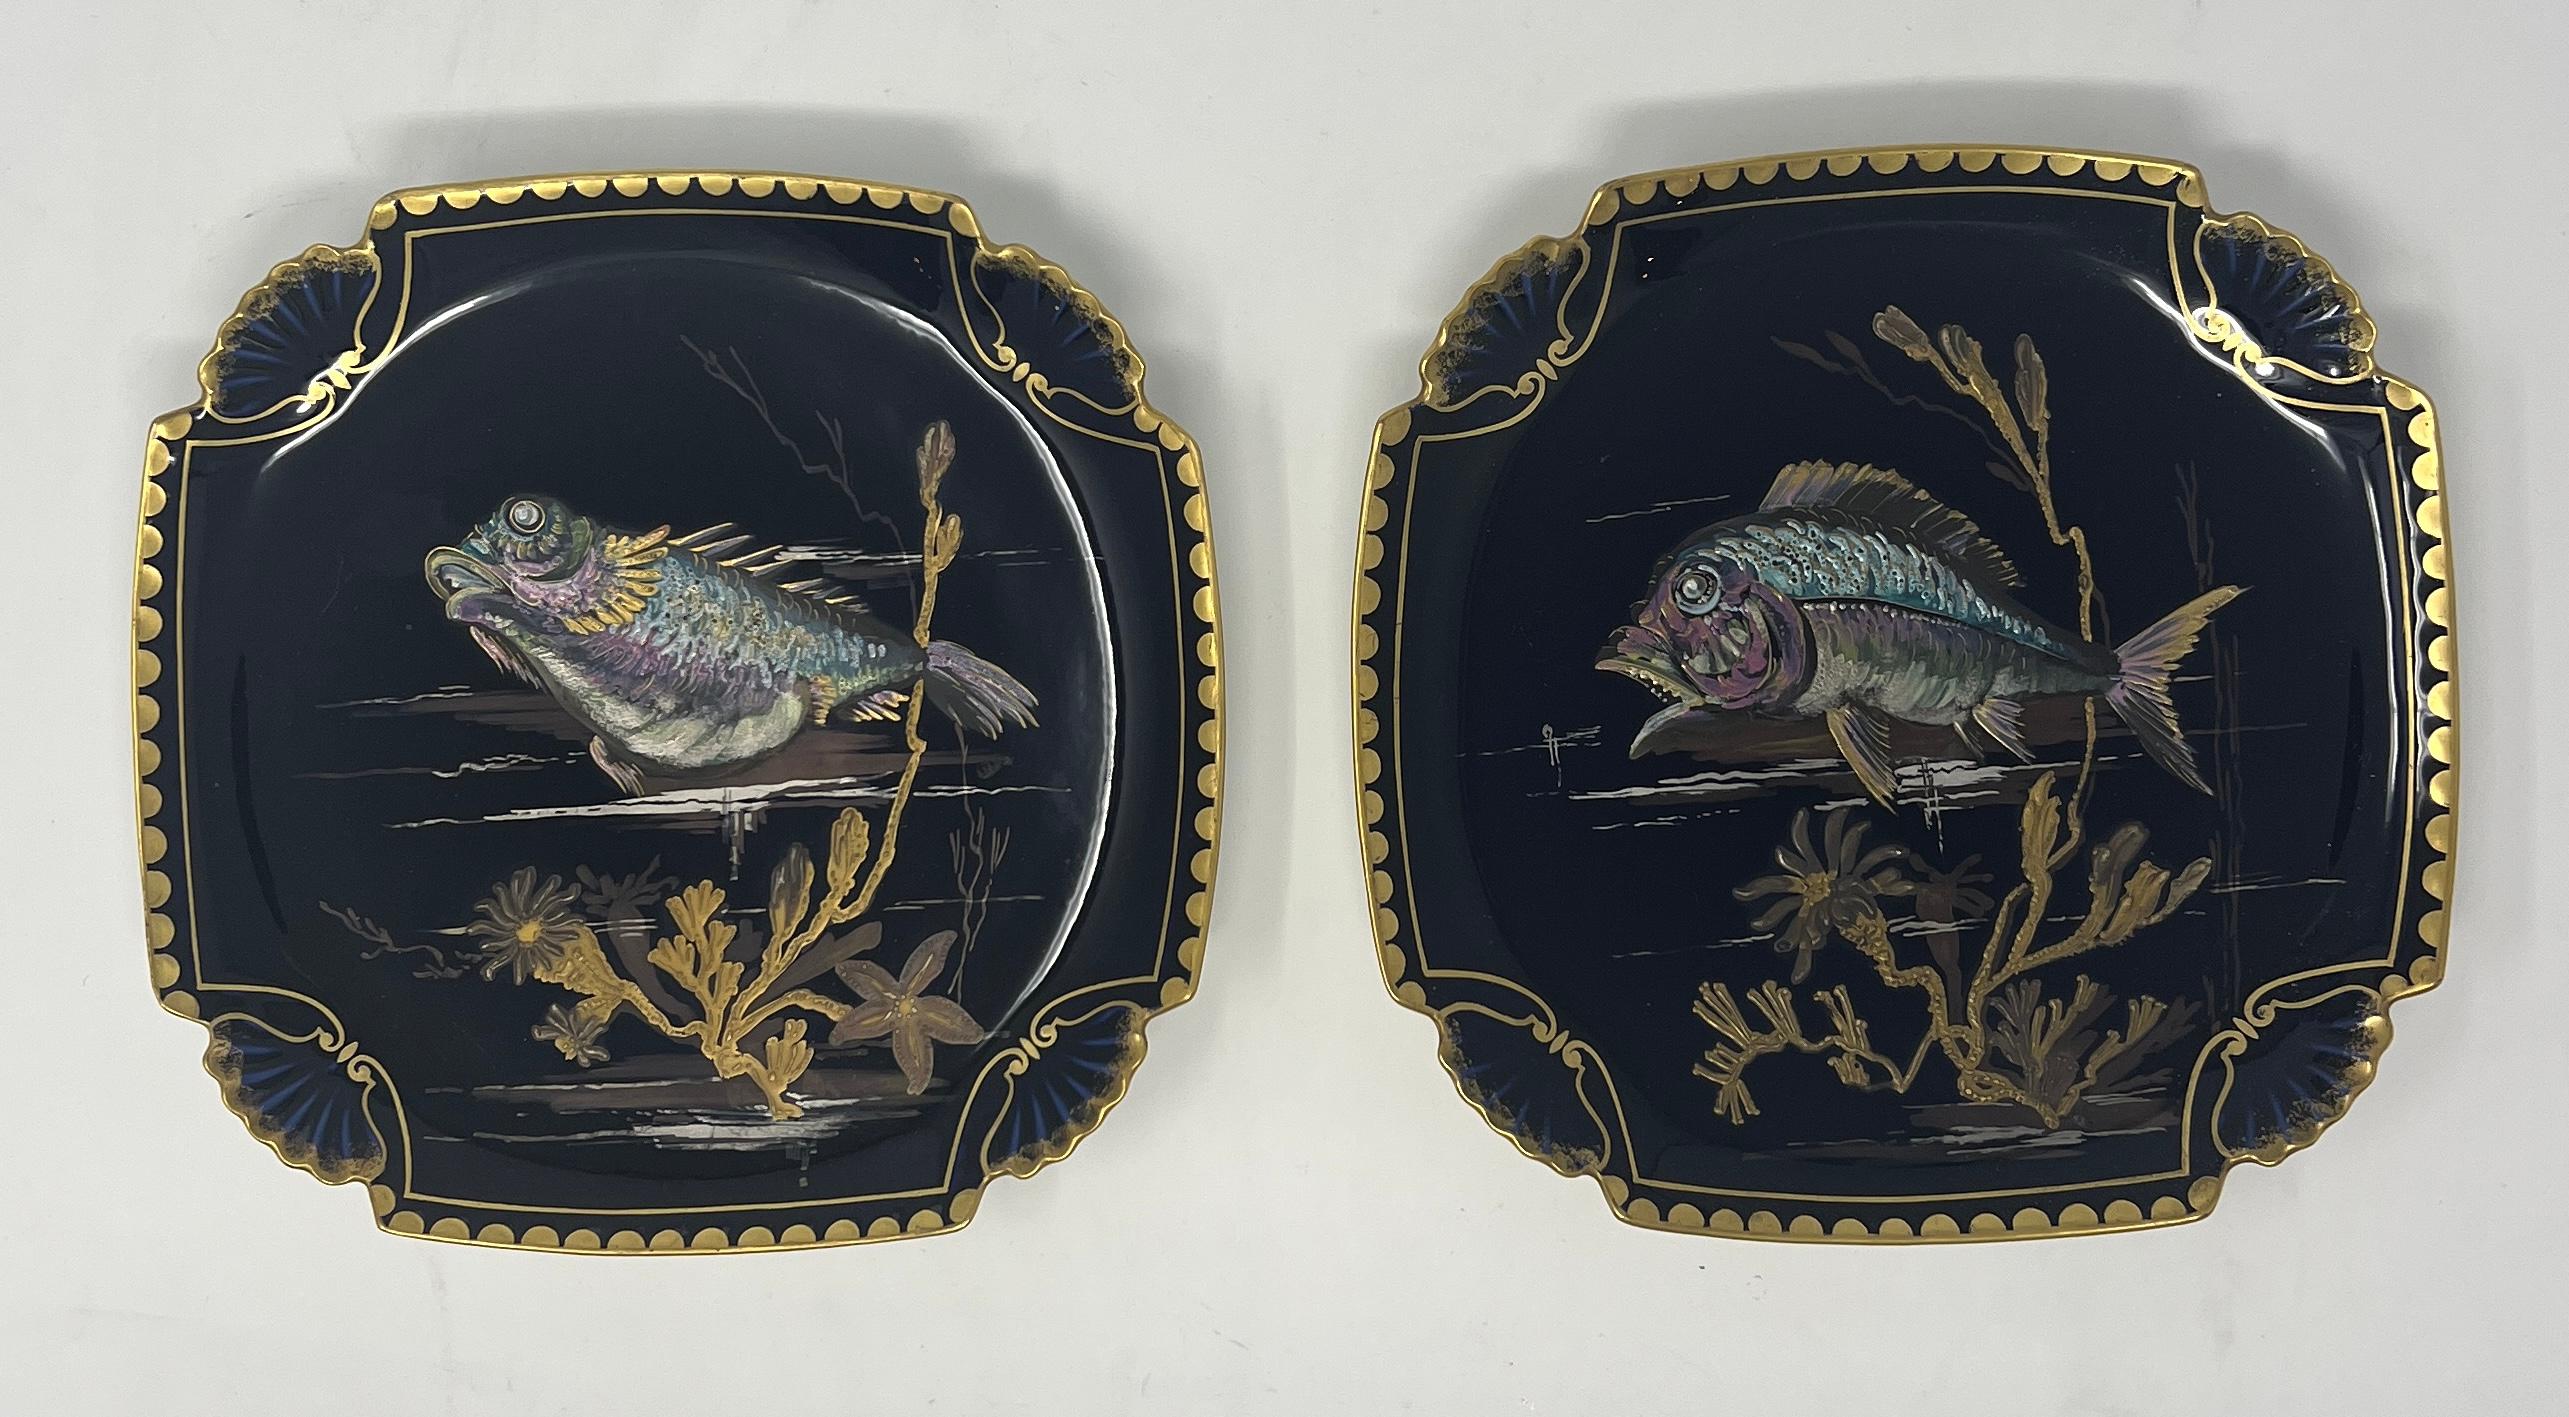 Ensemble de 10 assiettes à poisson anciennes en porcelaine de Limoges peintes à la main en bleu cobalt et or, vers 1890.